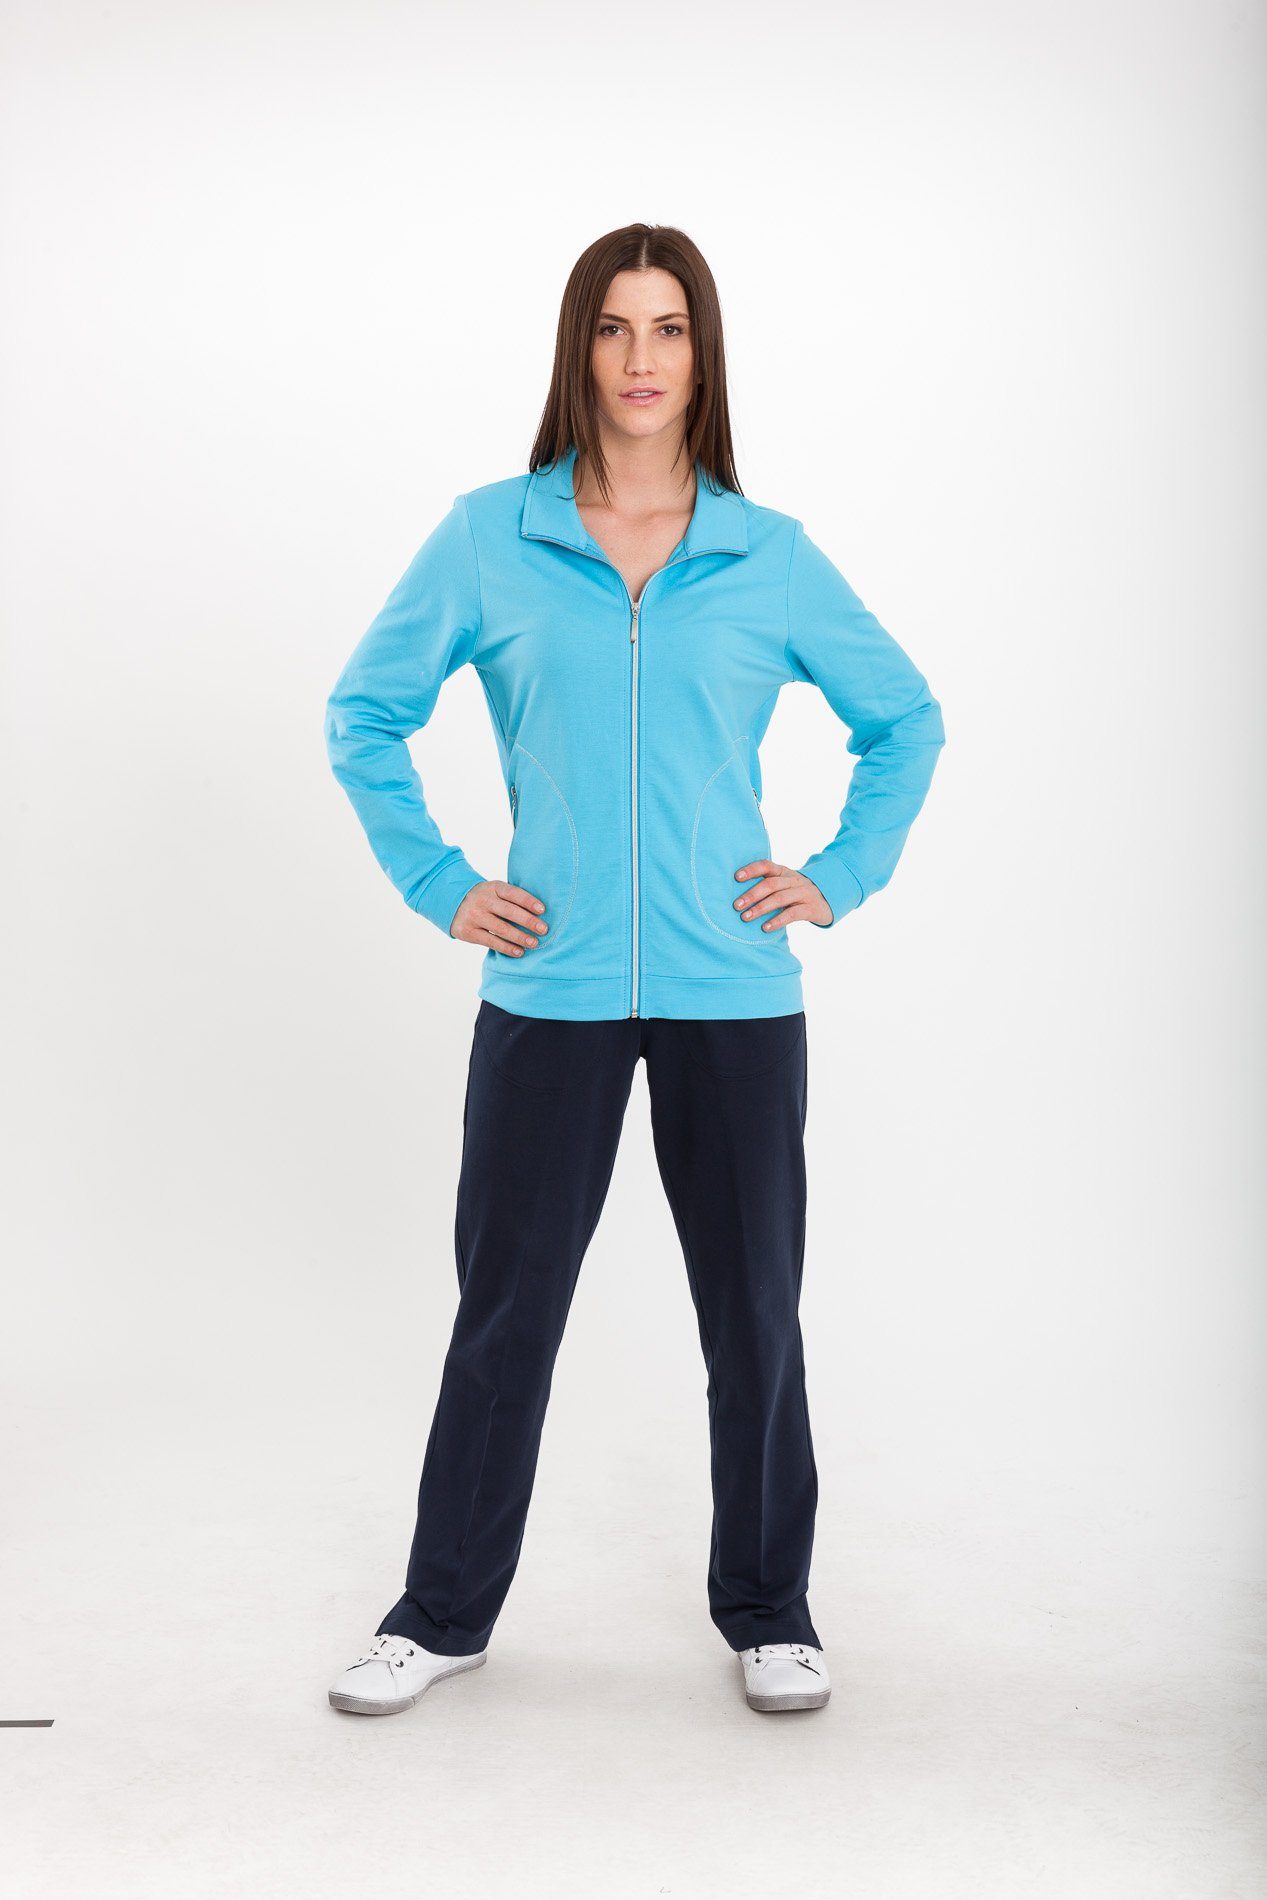 Authentic Klein Sweatjacke Damen Sport- und Freizeitjacke aus 100% Baumwolle Aqua | Jacken